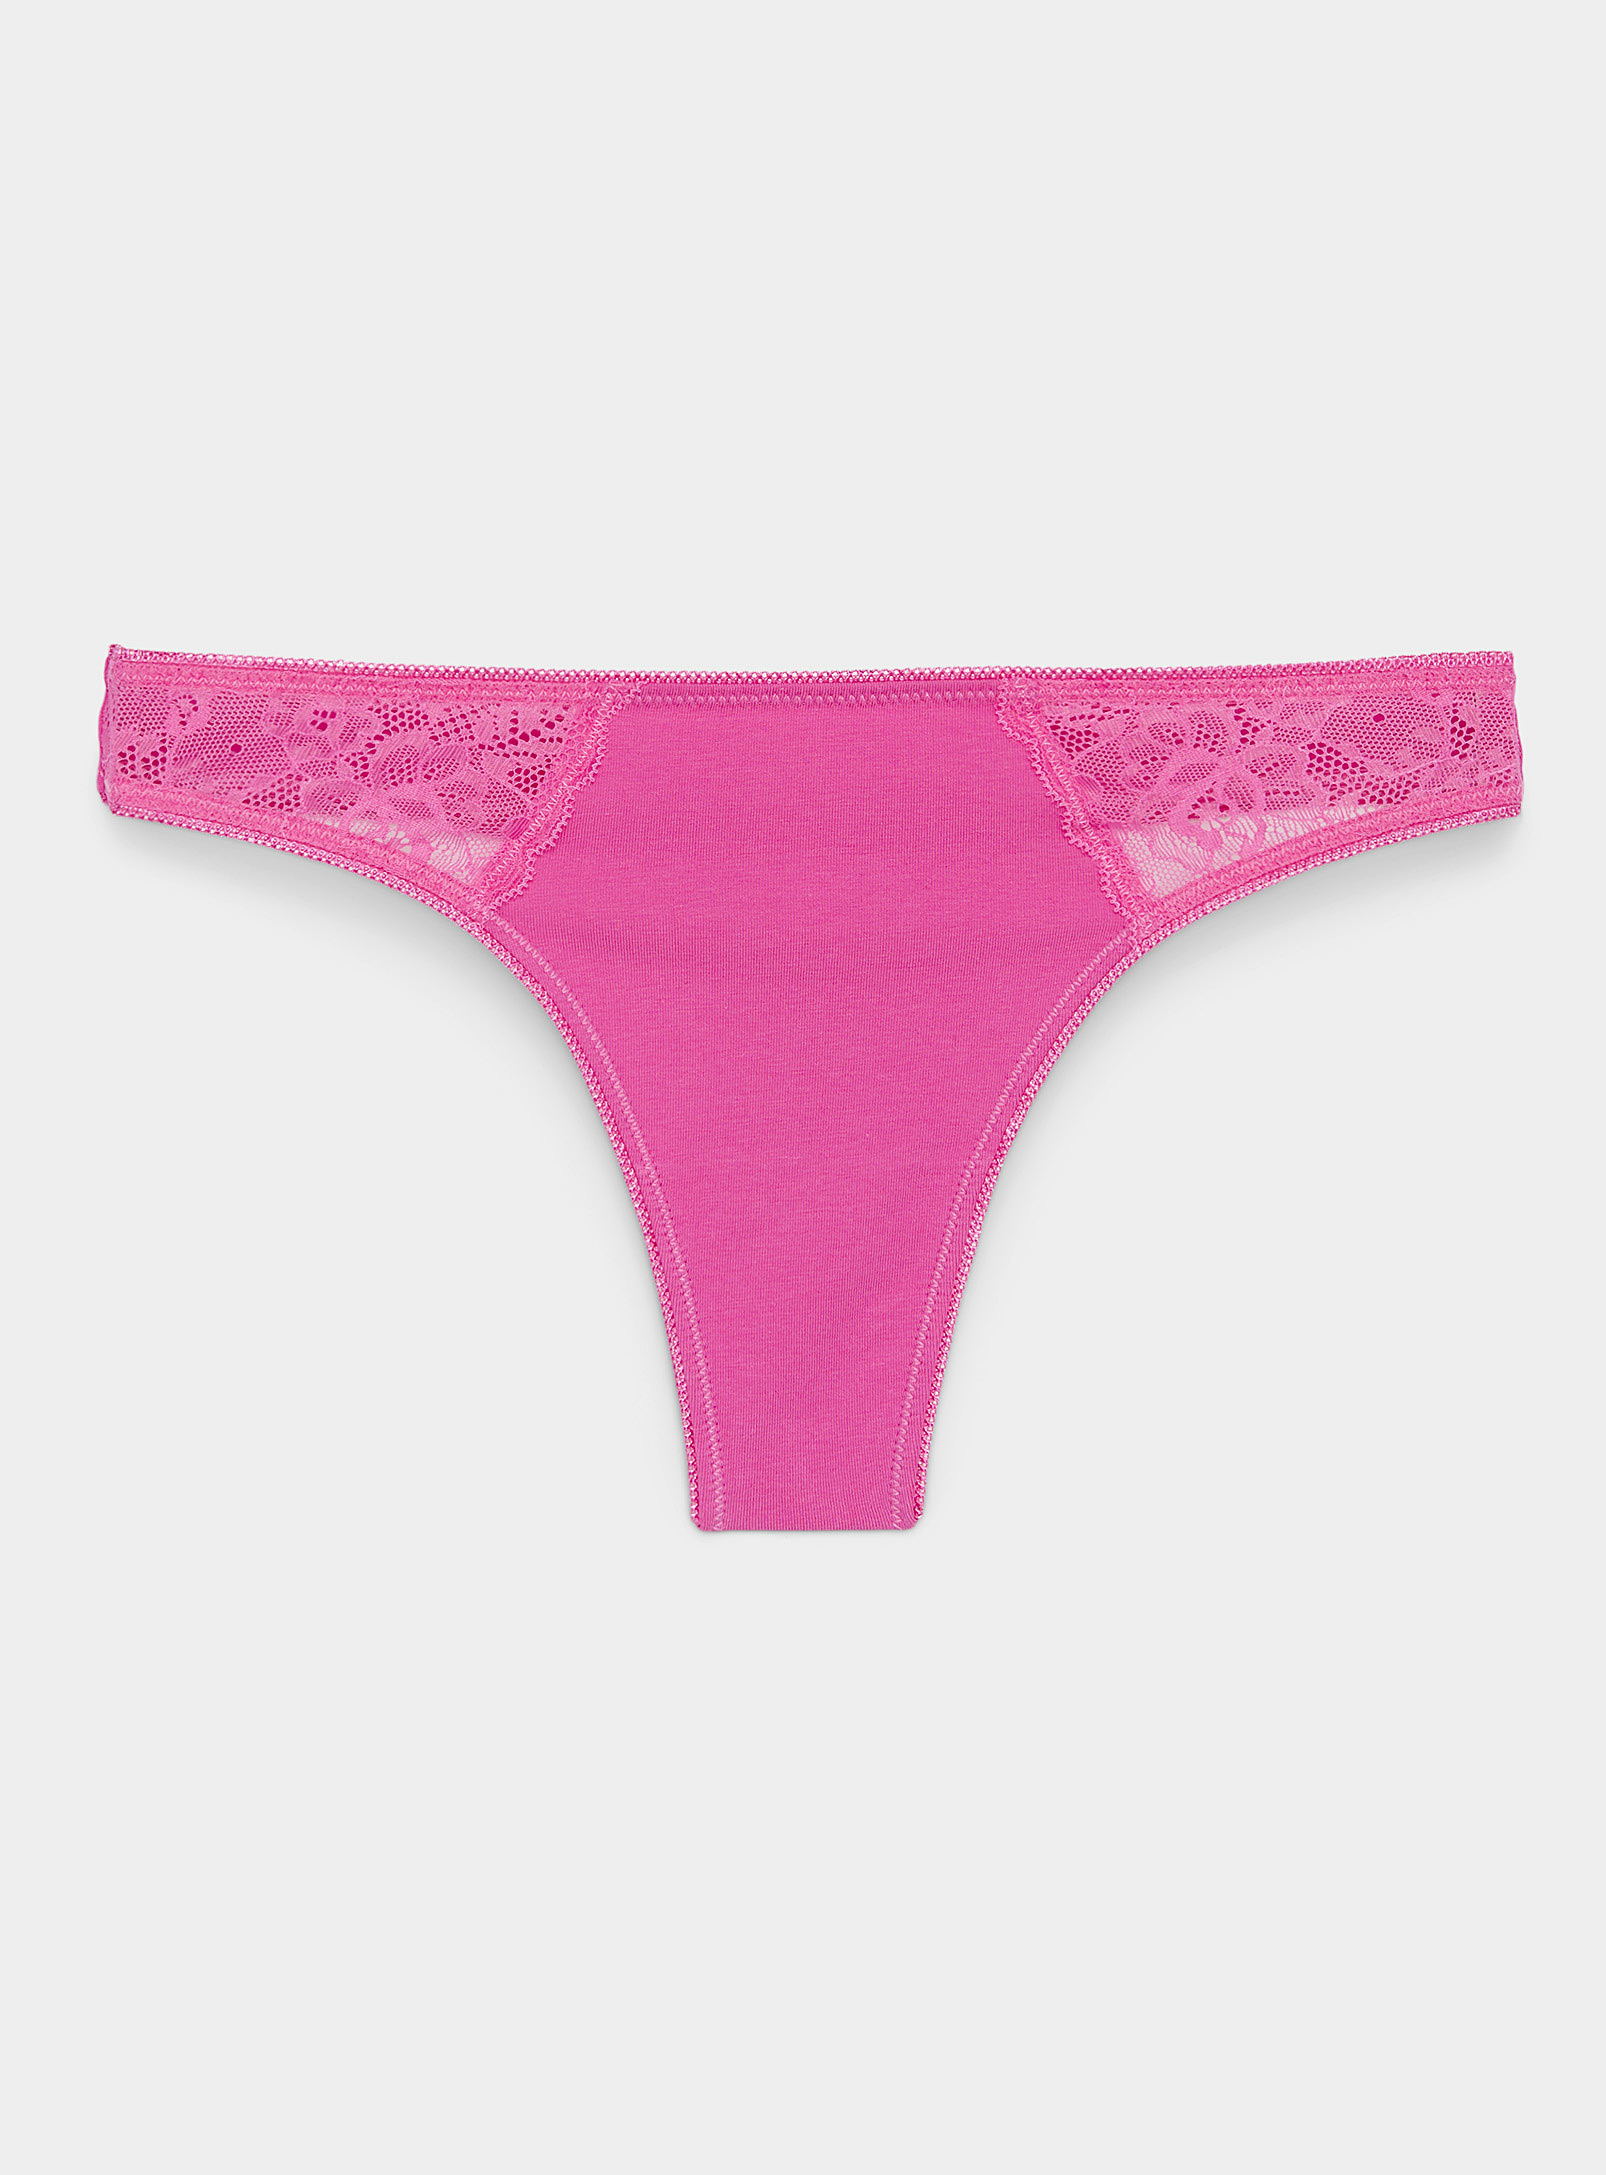 Miiyu Lace Organic Cotton Thong In Pink